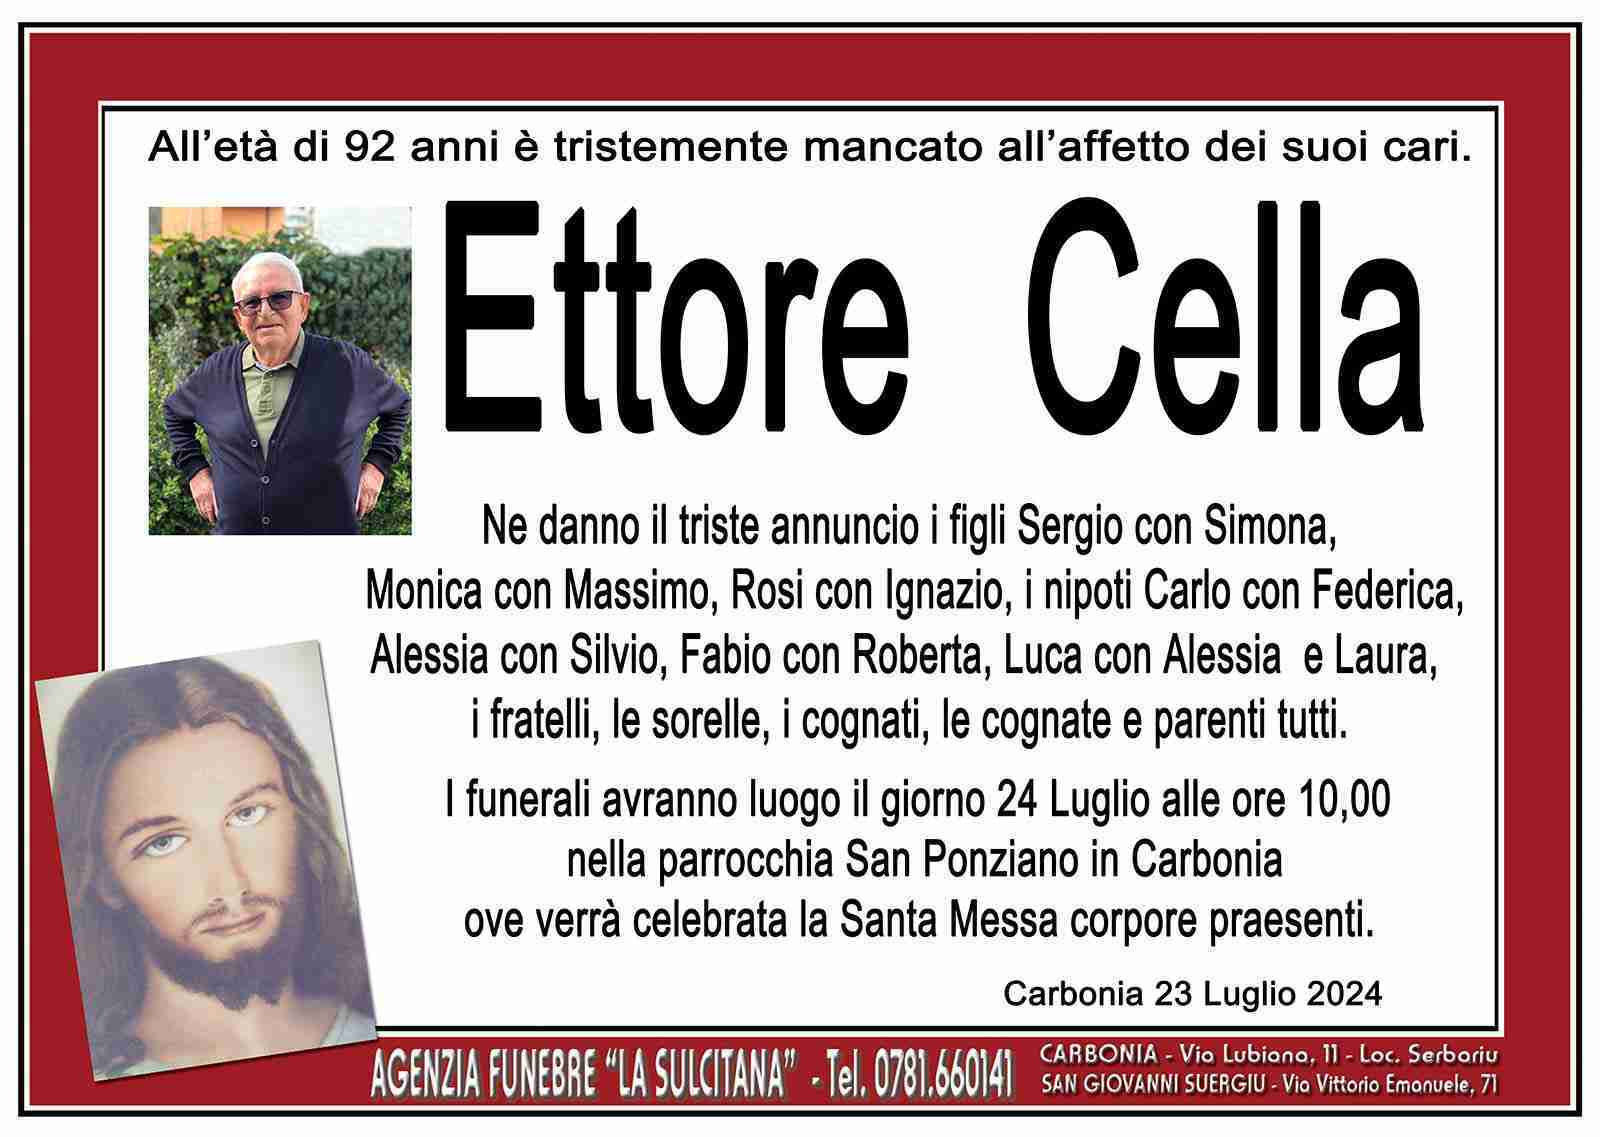 Ettore Cella